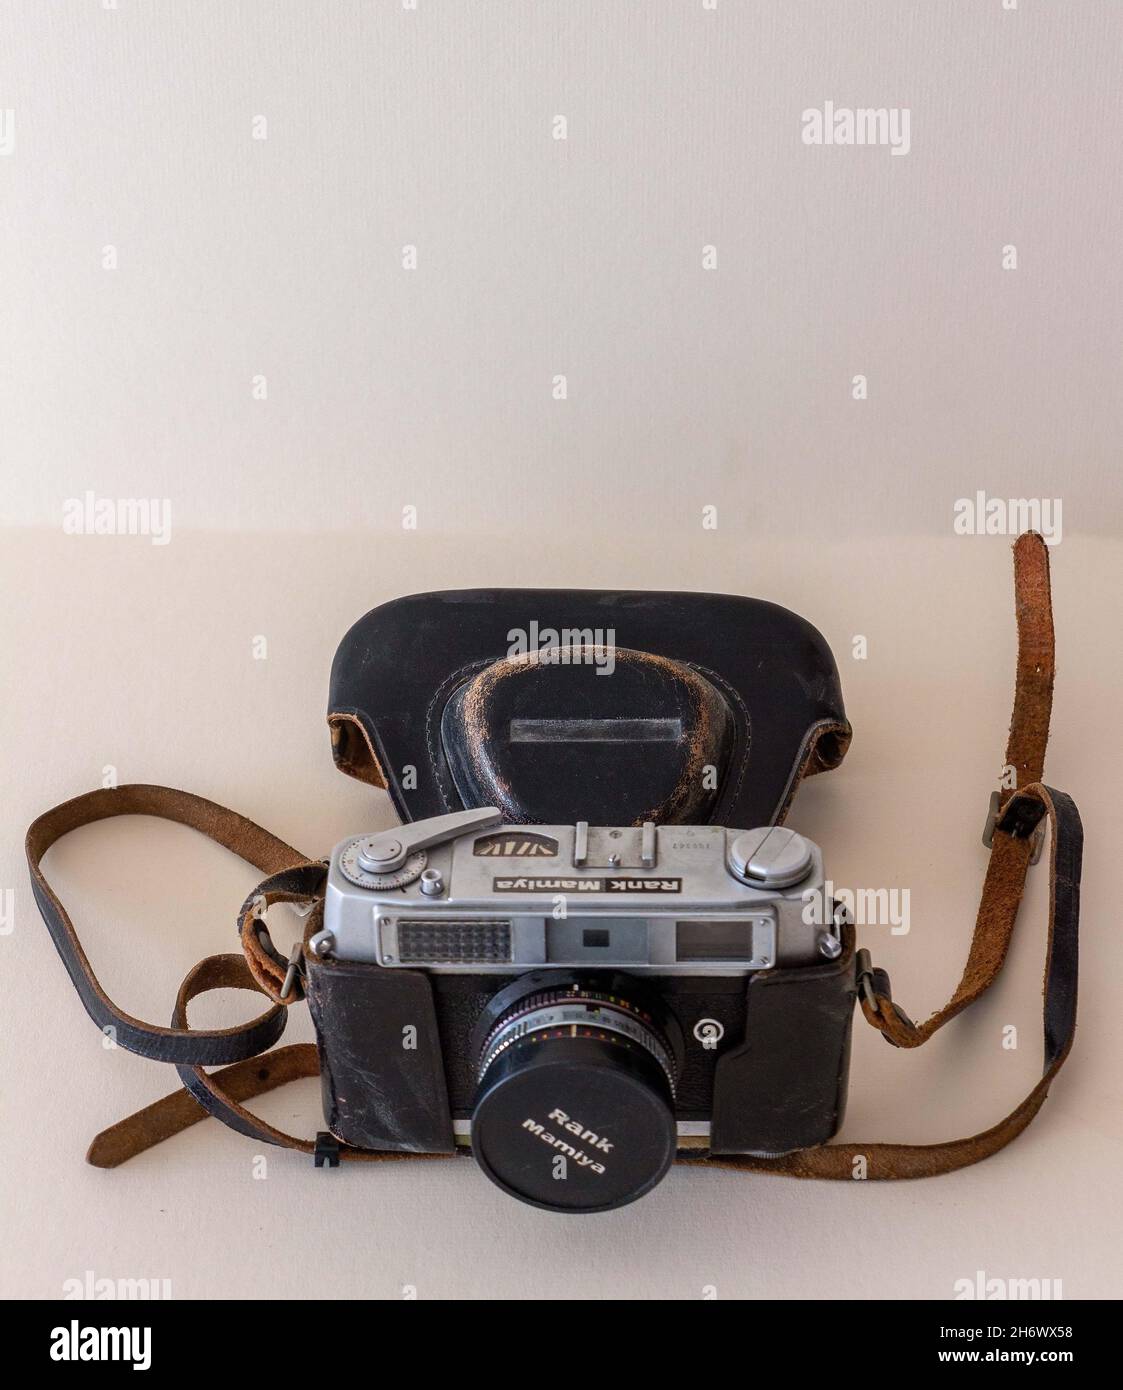 Rank Mamiya 35mm camera from the 1950's era Stock Photo